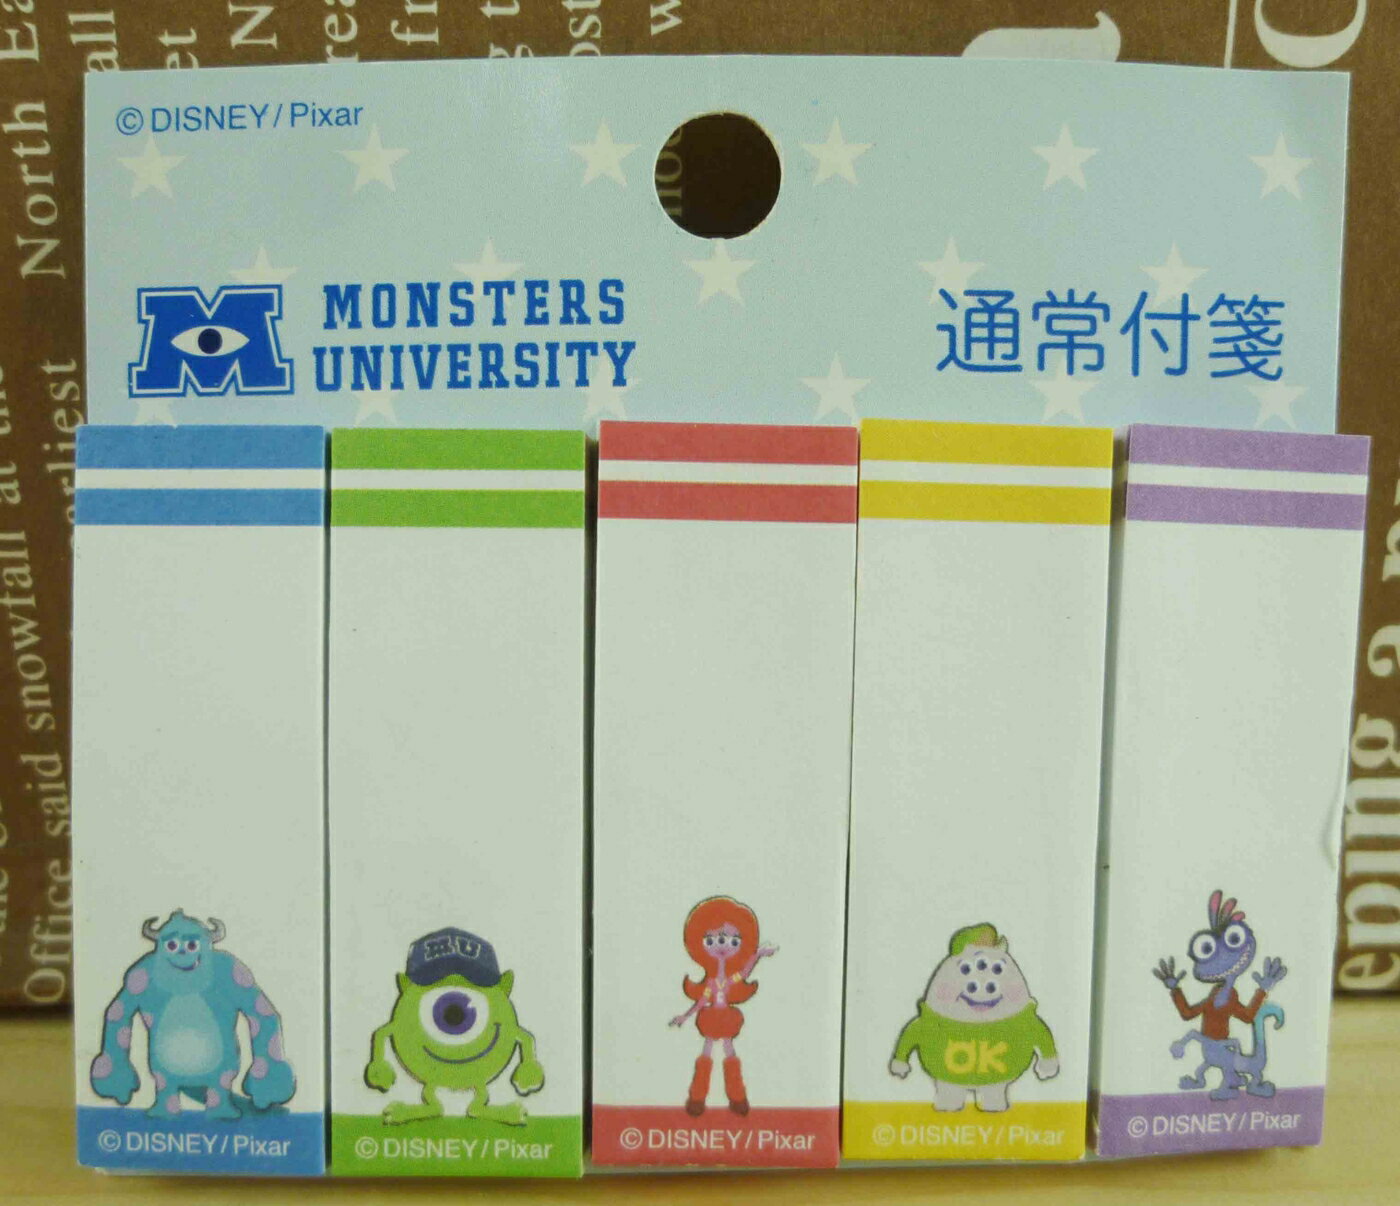 【震撼精品百貨】Monsters University 怪獸大學 便利貼-白底 震撼日式精品百貨